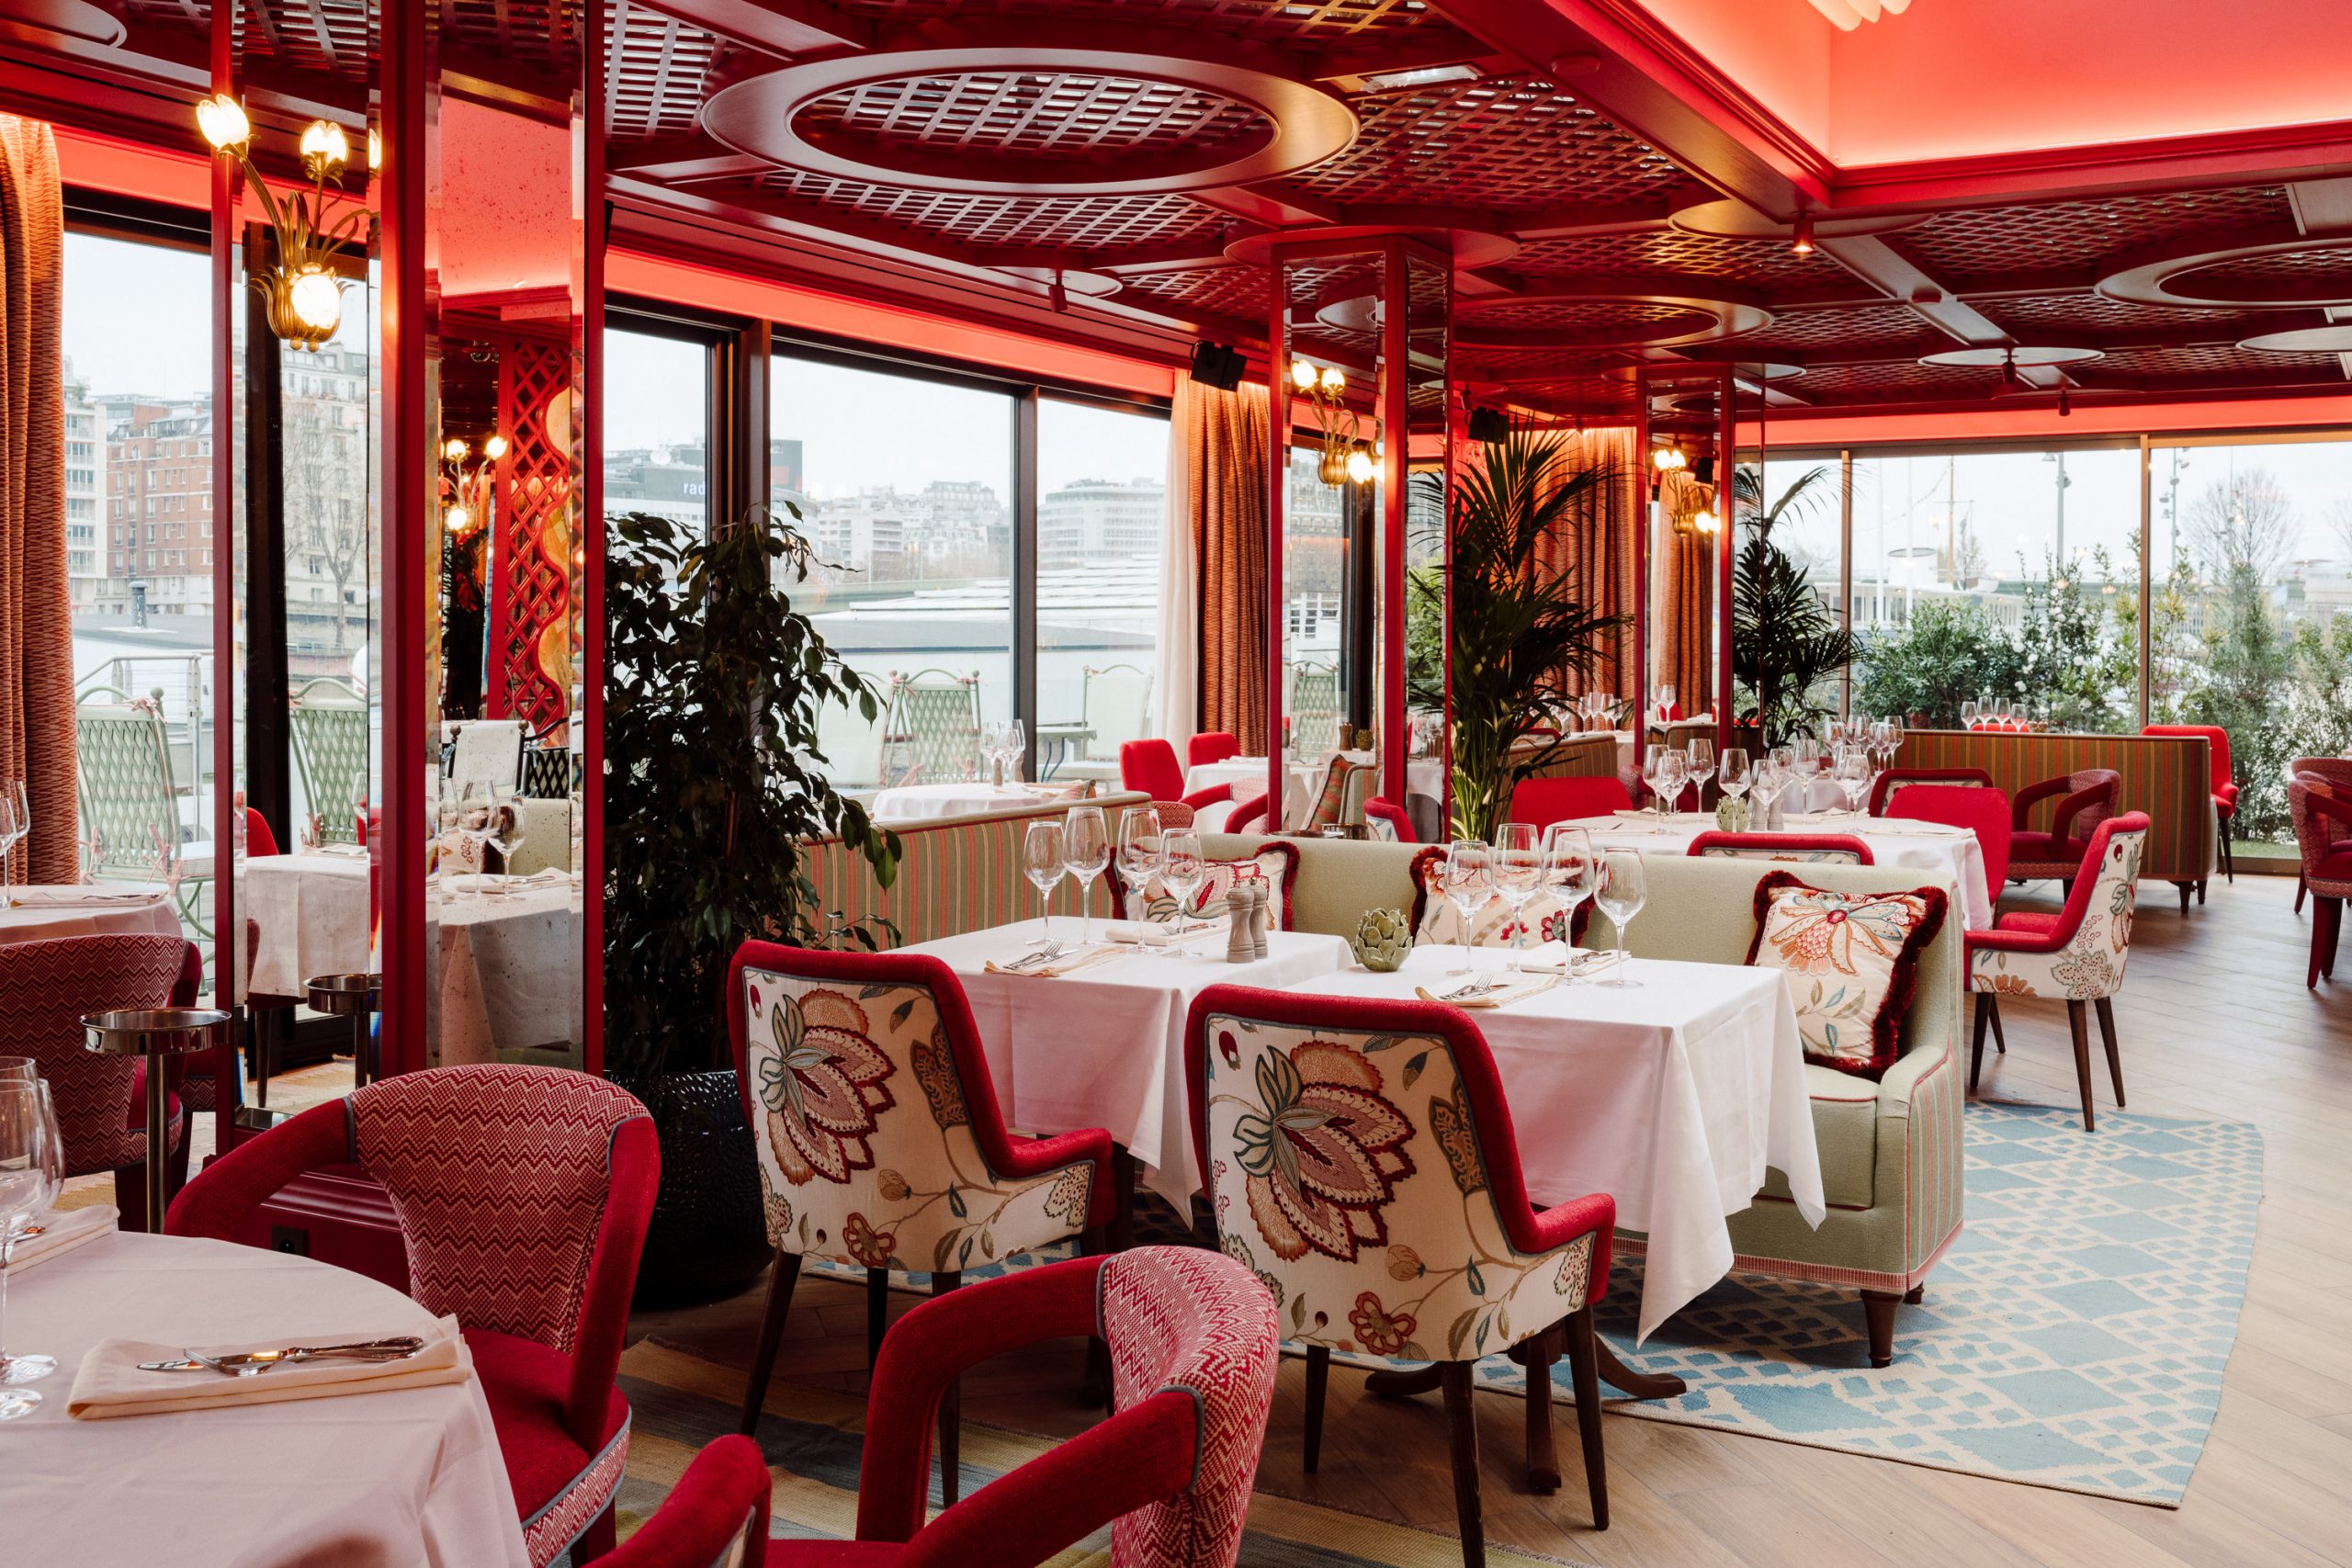 Cuisine seahouse et esprit «guinguette chic» à La Plage Parisienne